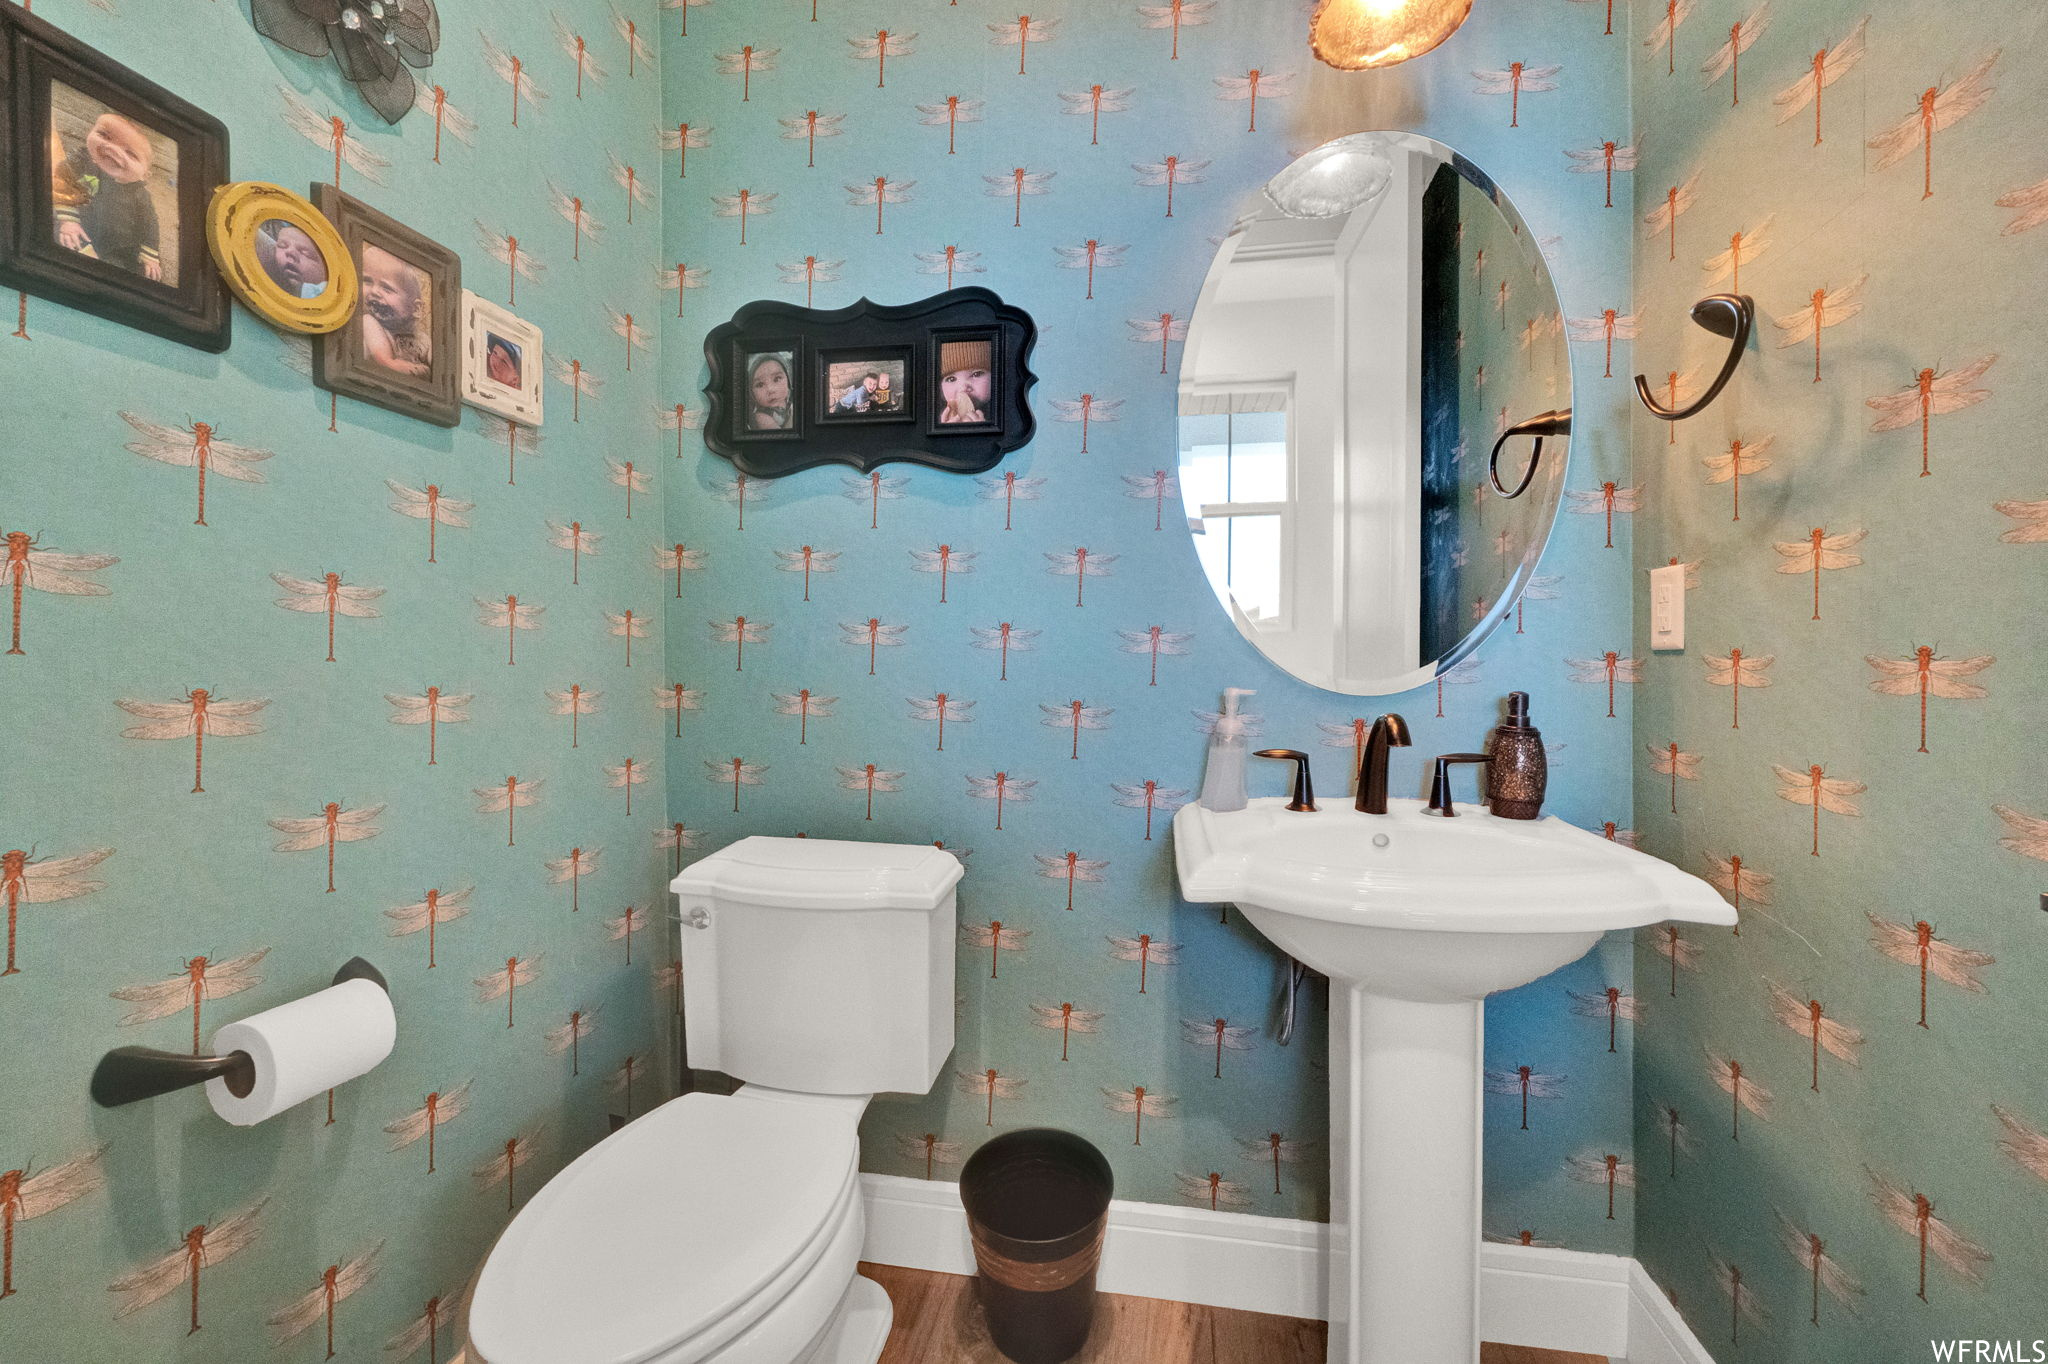 Bathroom with mirror, washbasin, and hardwood floors